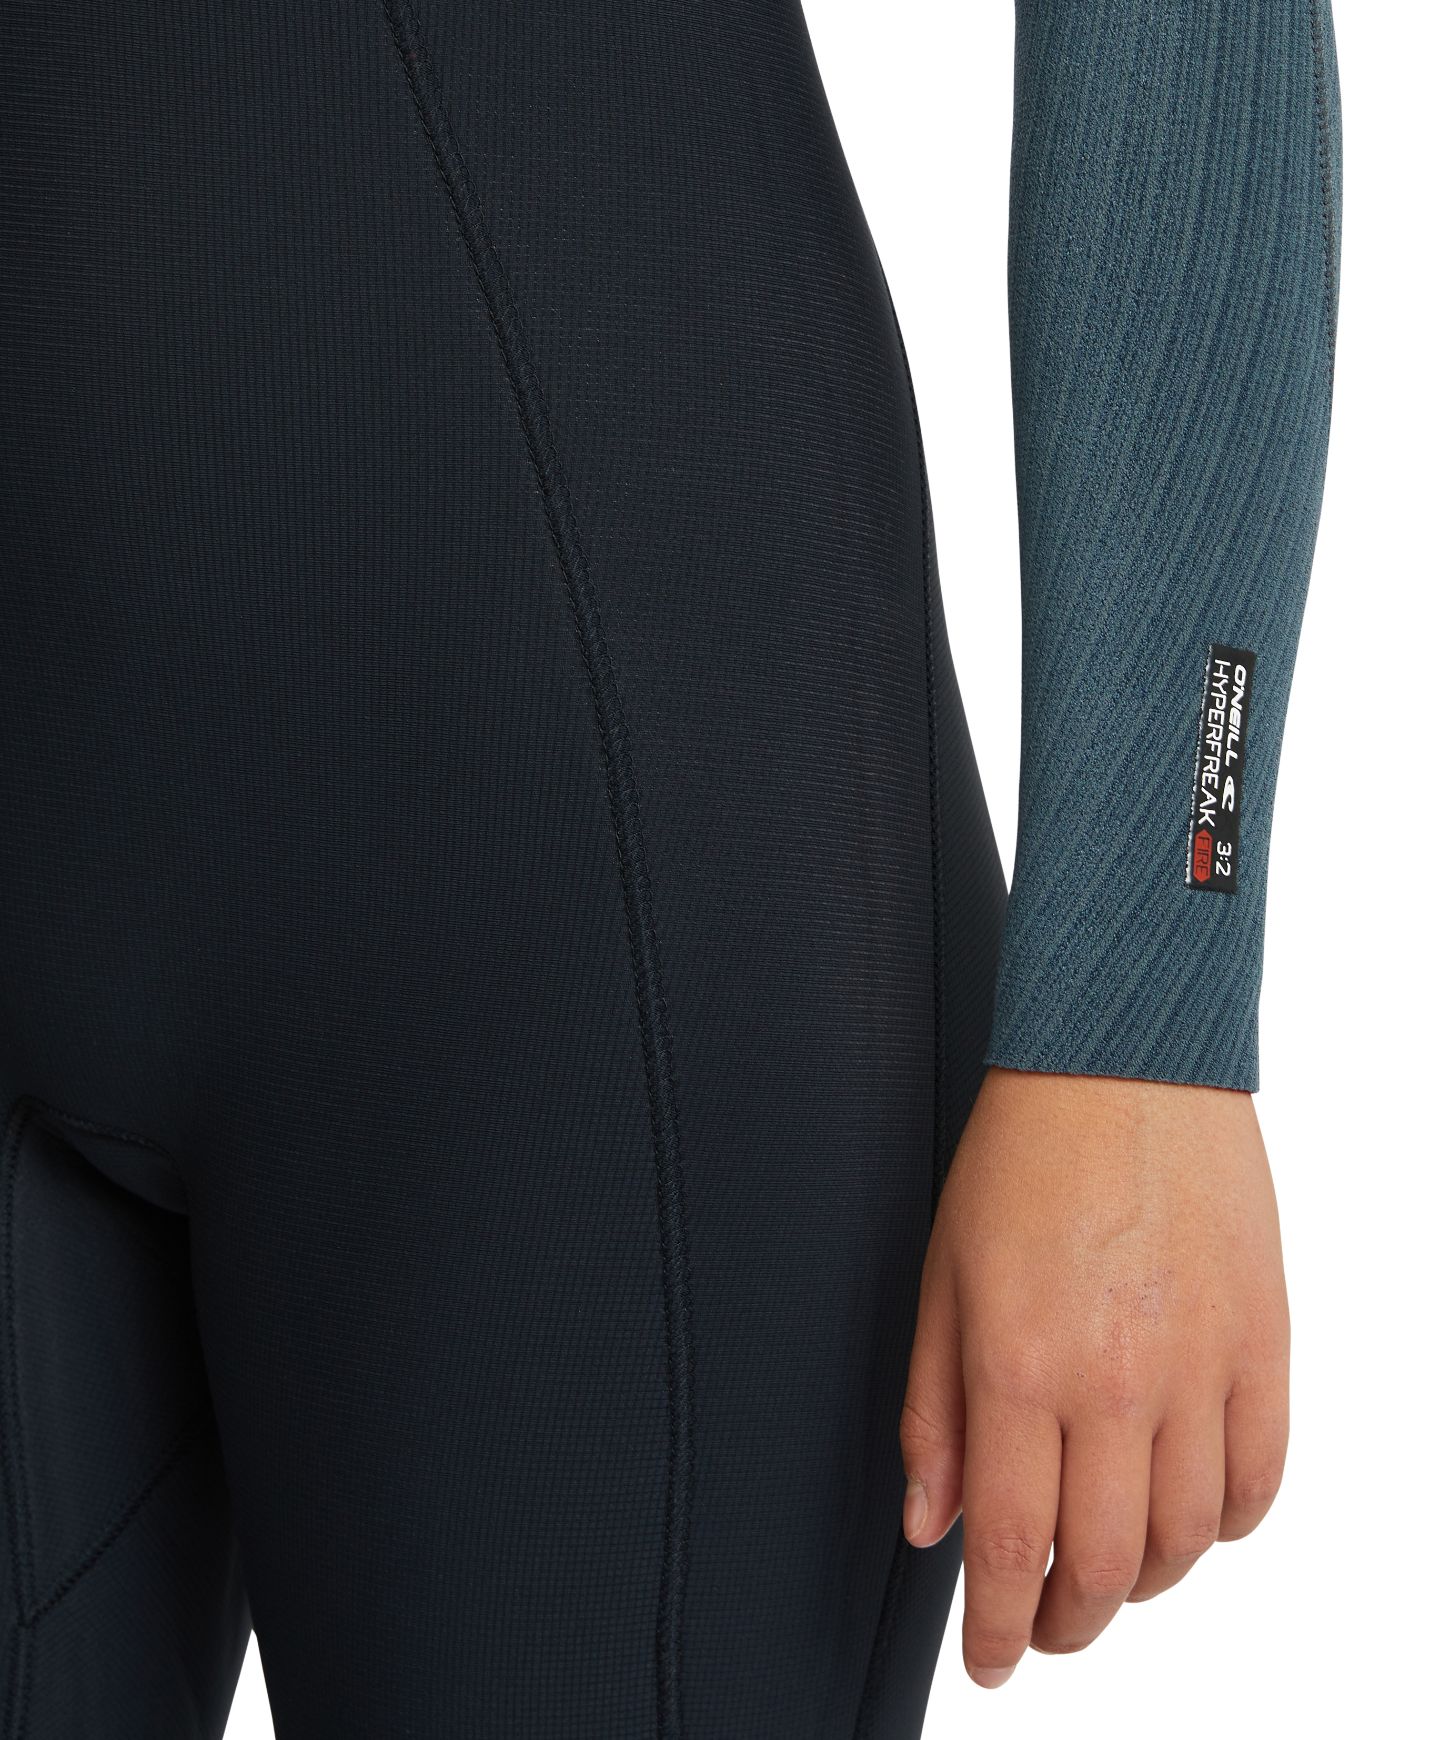 Women's HyperFire 3/2mm Steamer Chest Zip Wetsuit - Shade